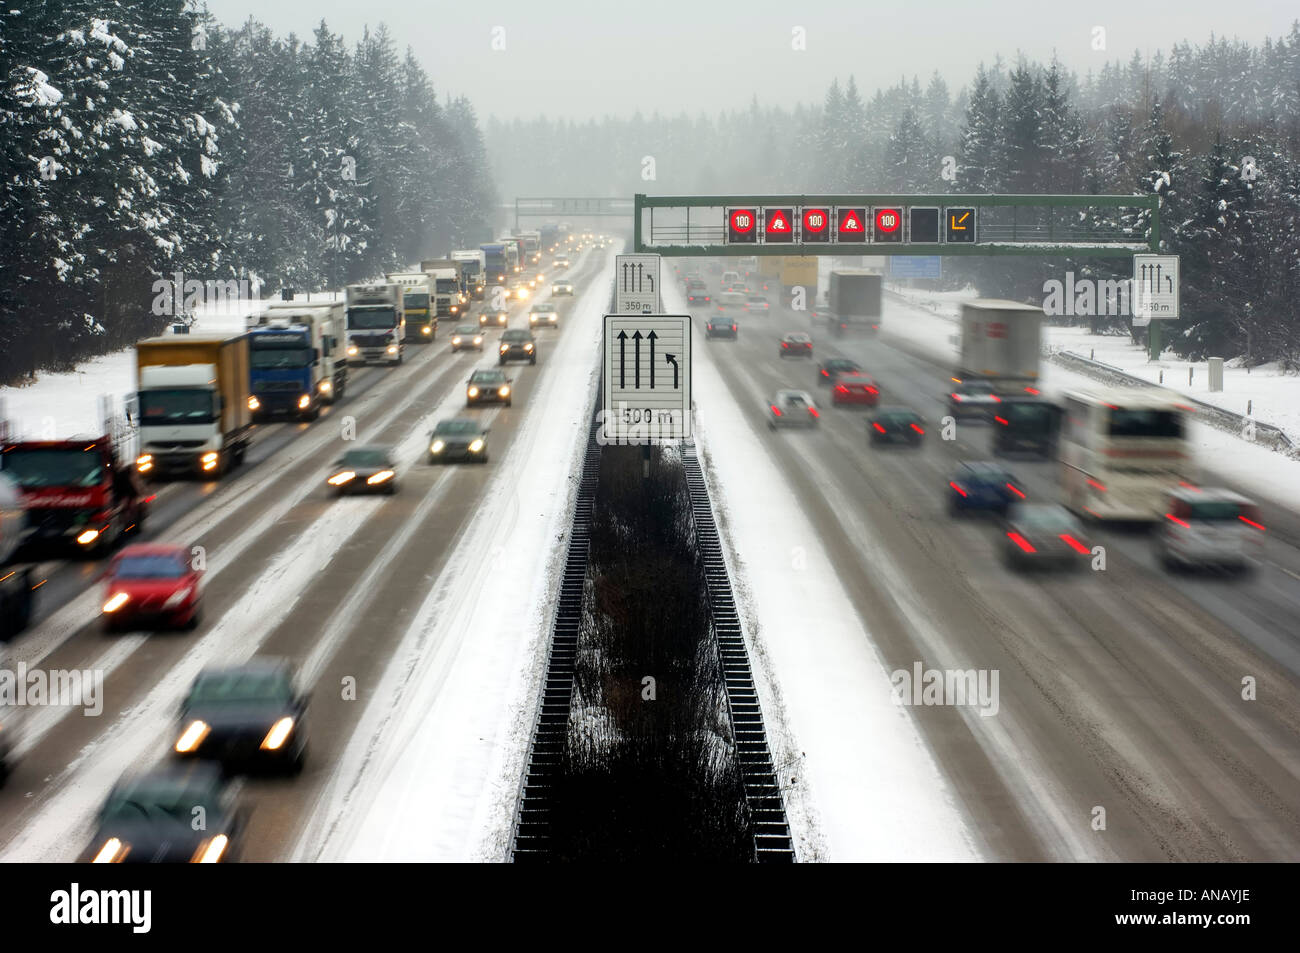 Autoroute à l'hiver de la route, embouteillage sur l'autoroute Banque D'Images